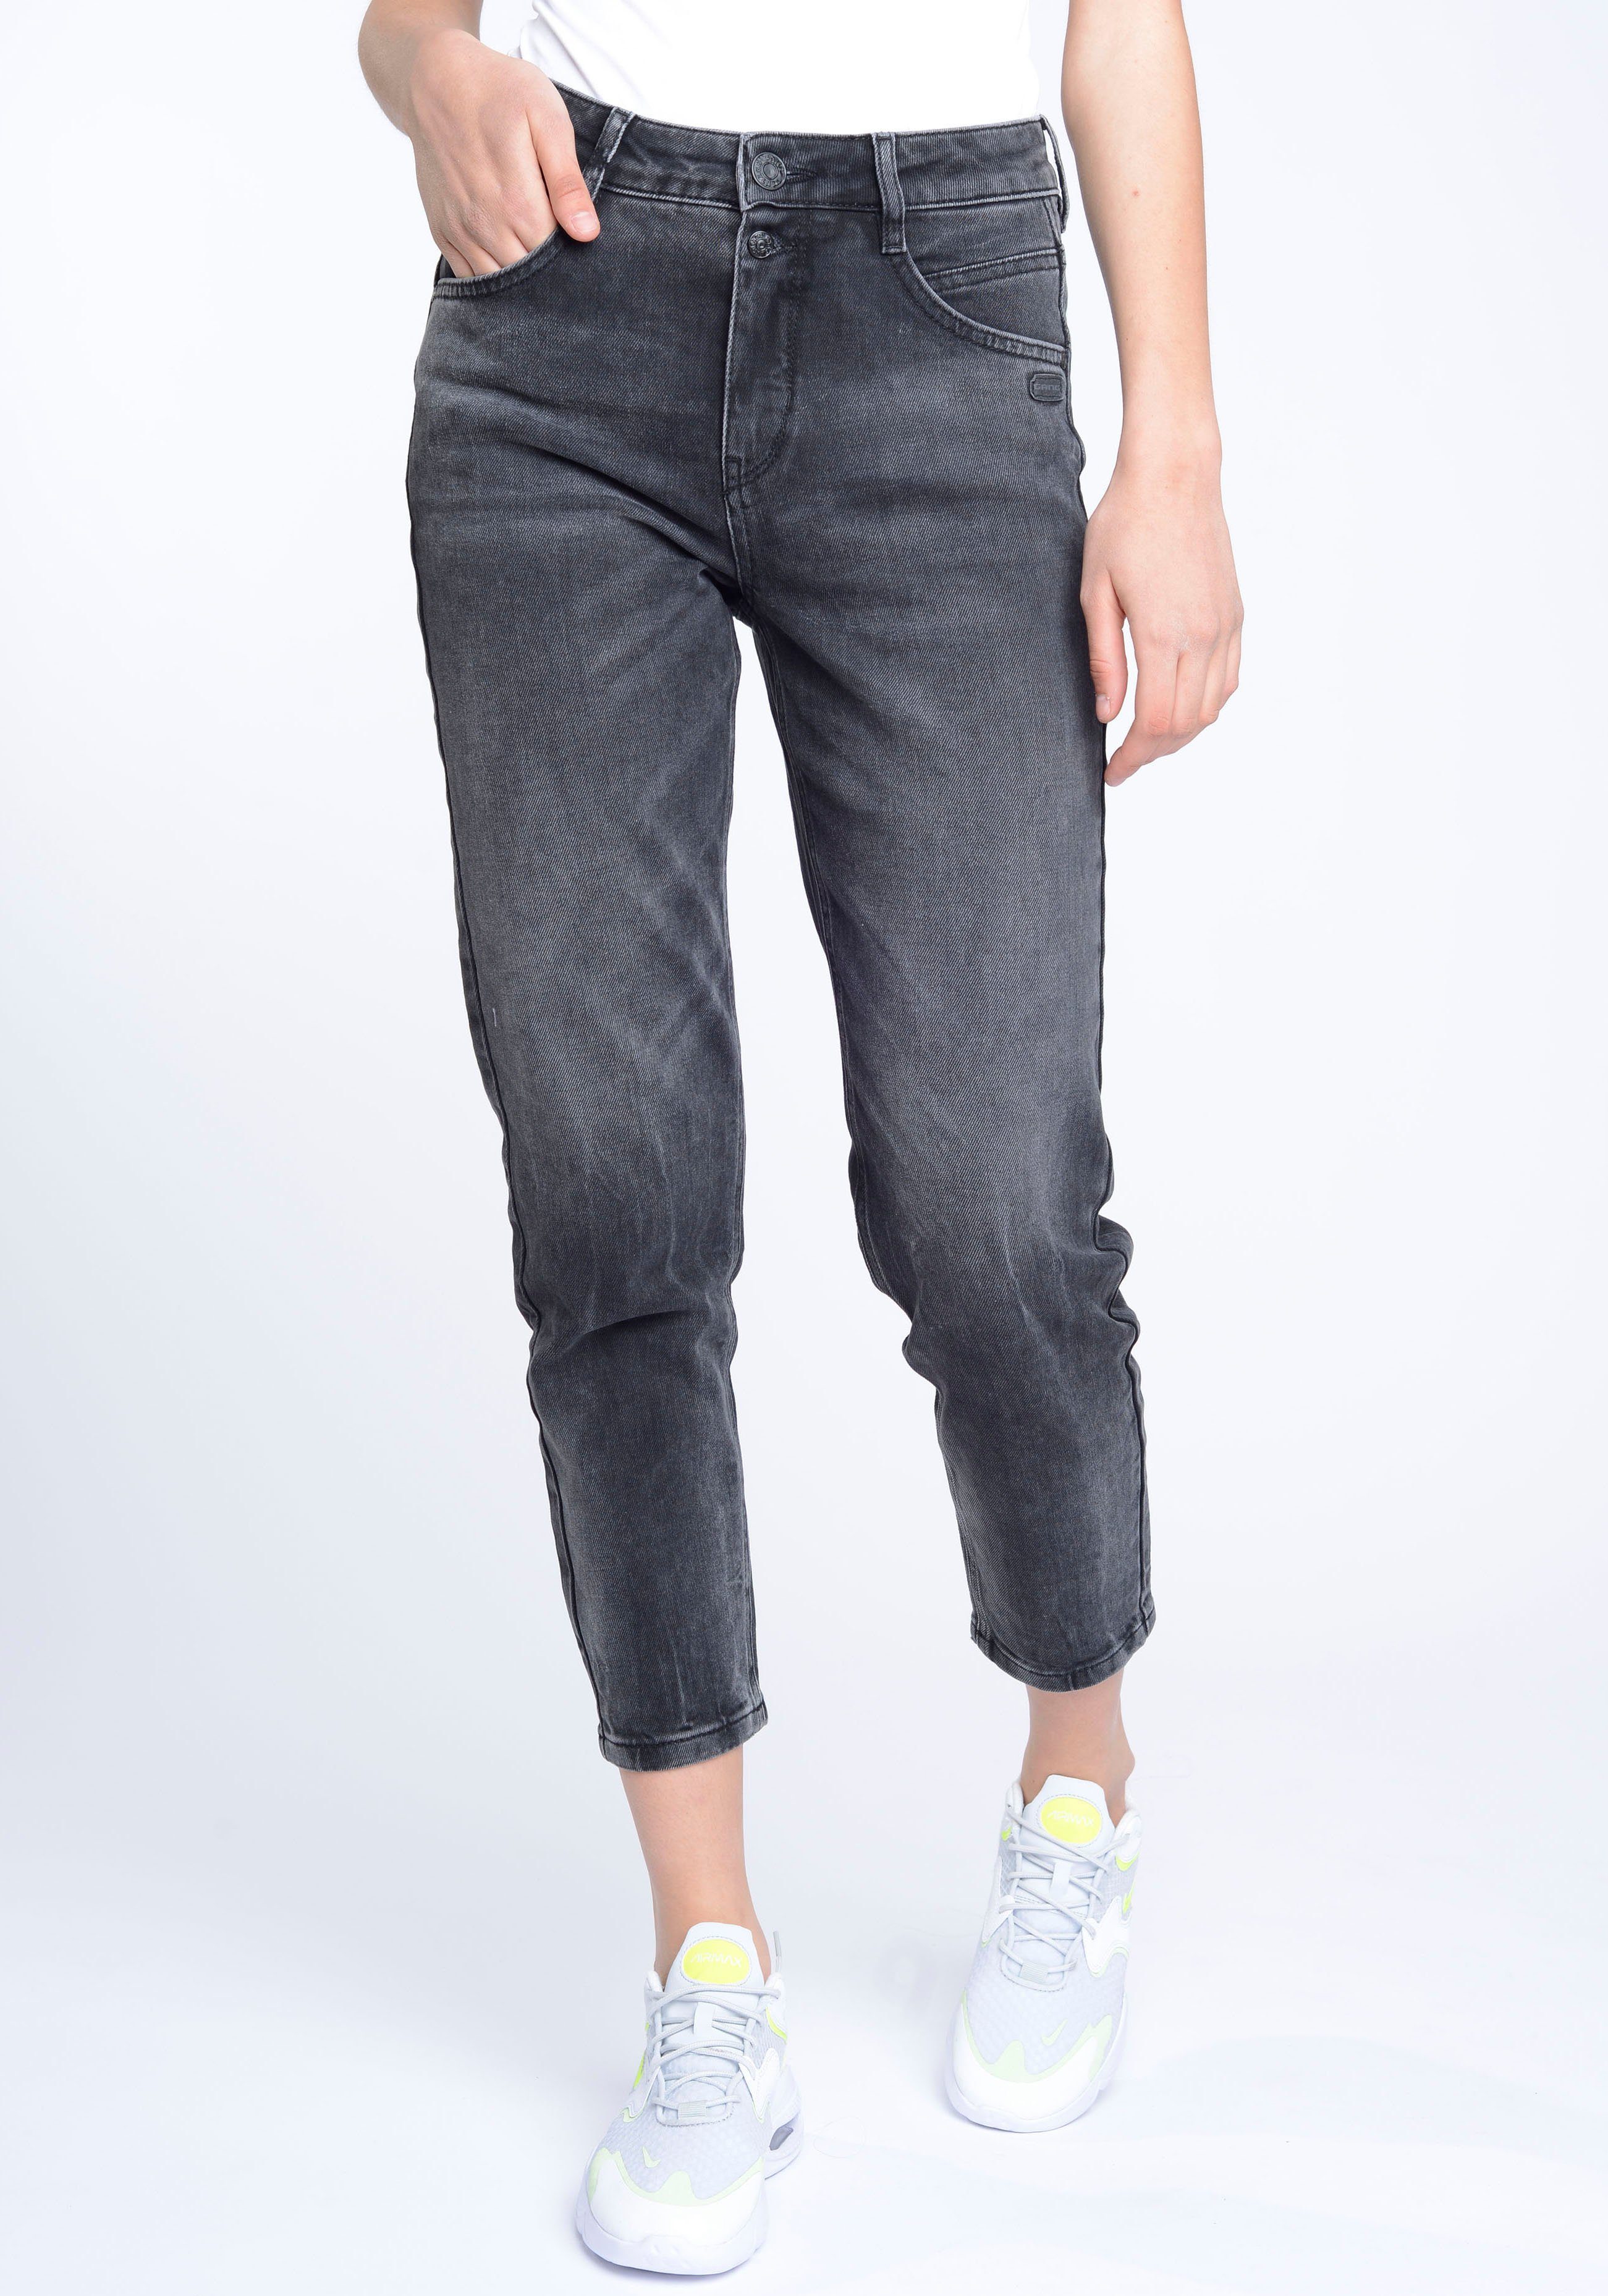 Mom-Jeans Vintage verkürzter 94ORA Grey Beinlänge GANG mit 2-Knopf-Verschluss